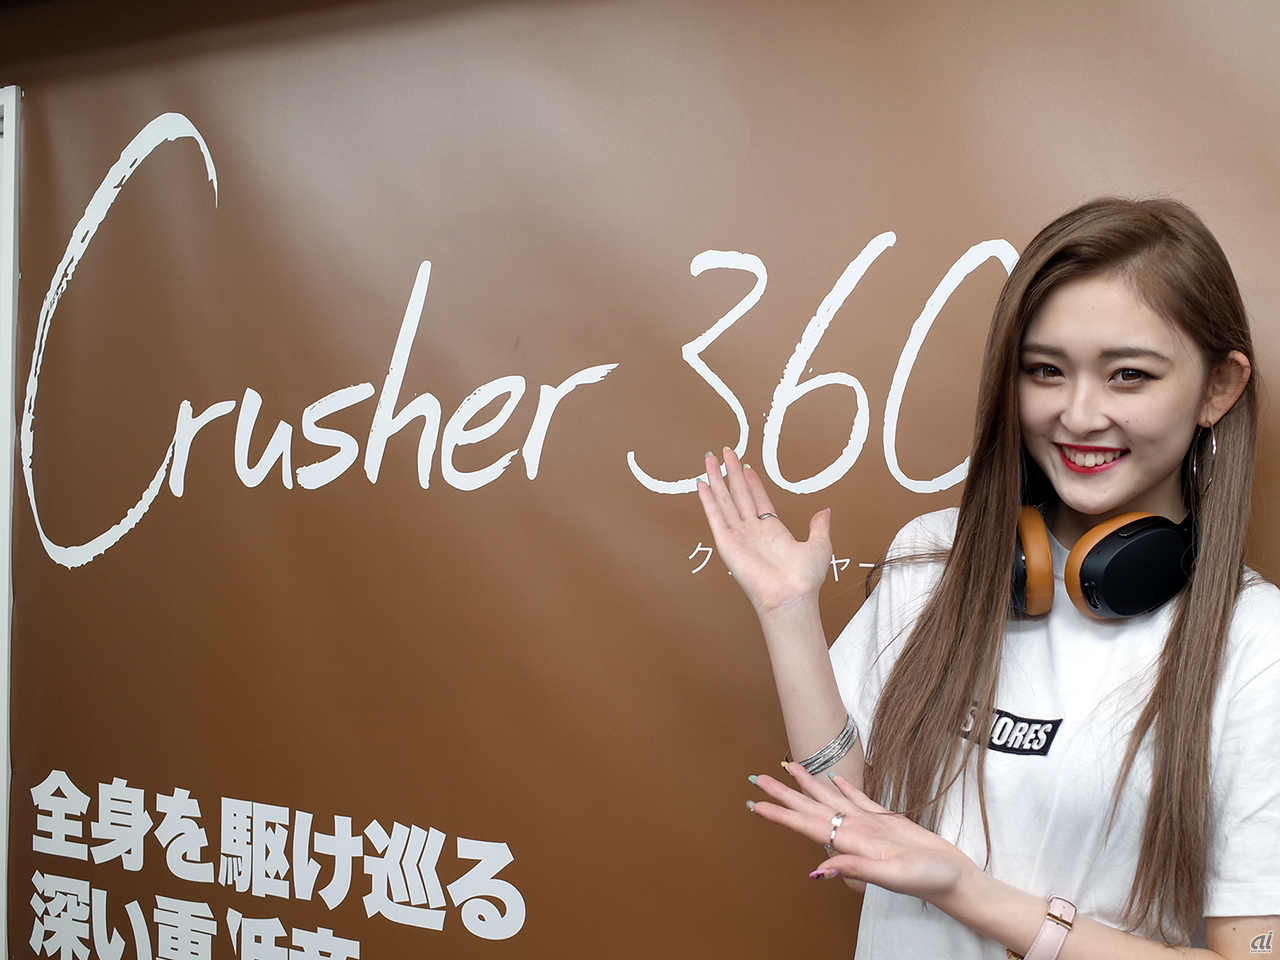 「Crusher 360」